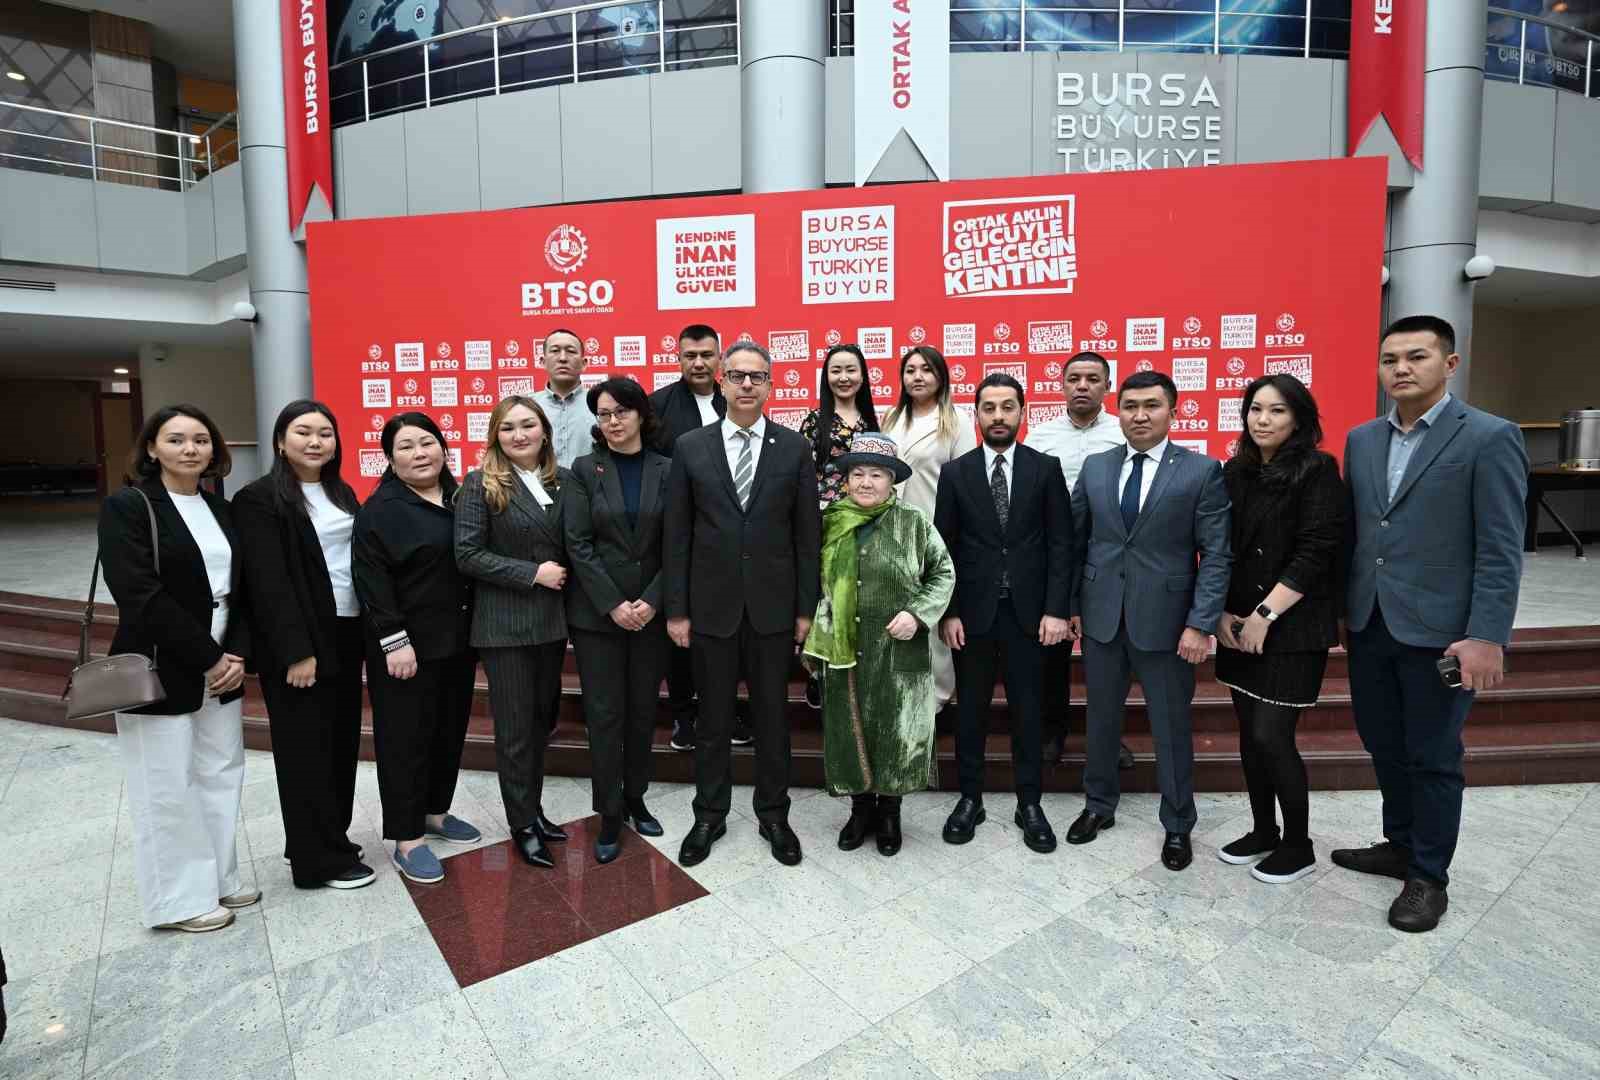 Kırgızistan iş dünyası işbirliği için Bursa’da